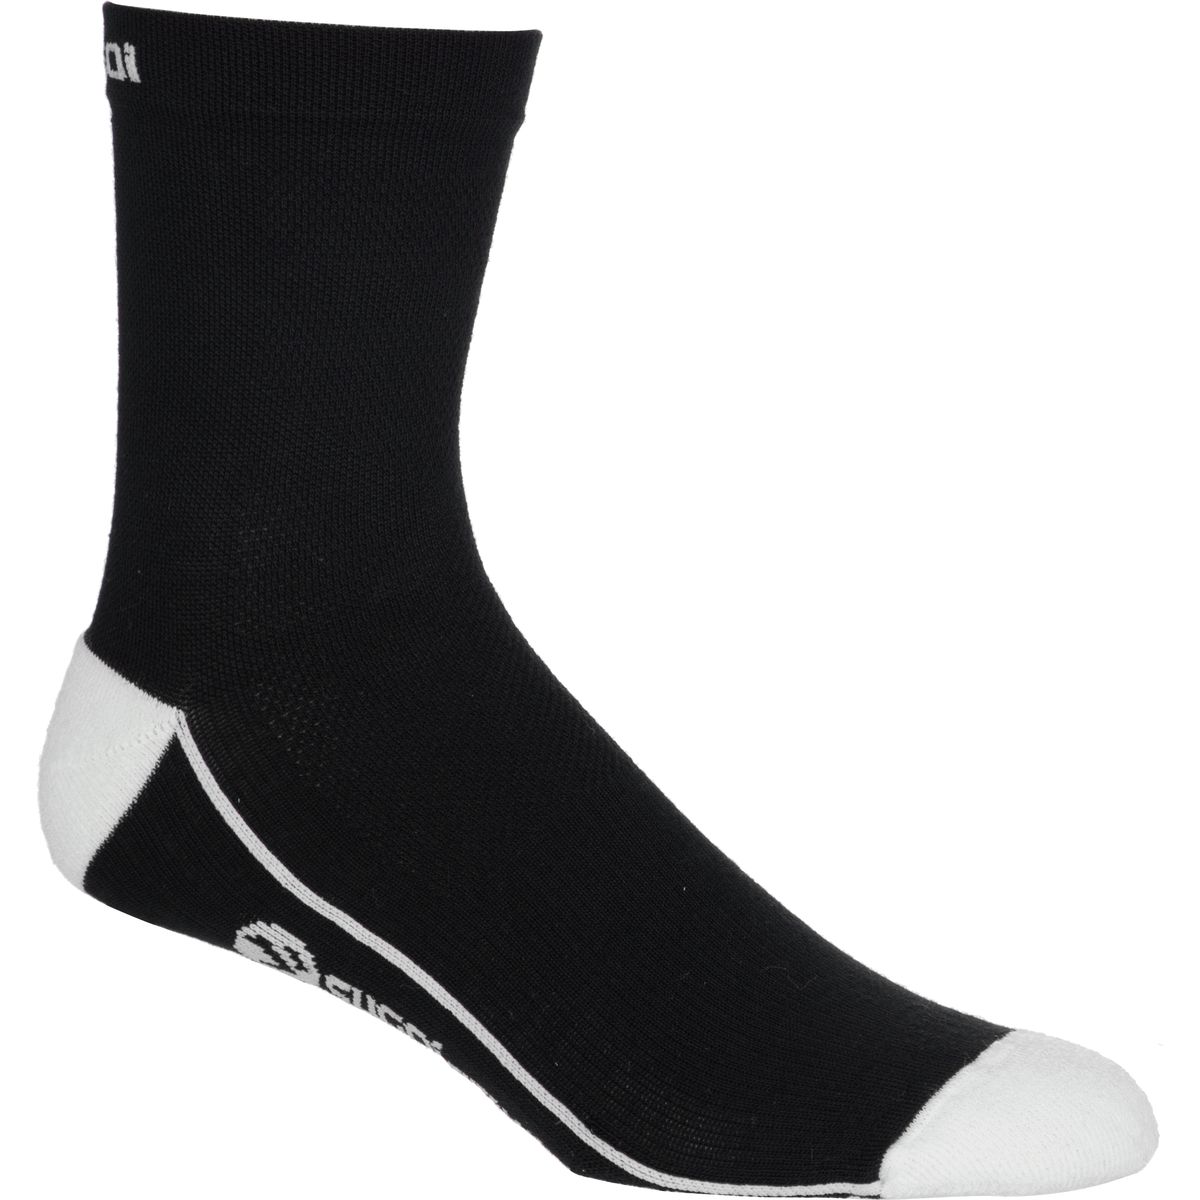 SUGOi RS Winter Sock Mens